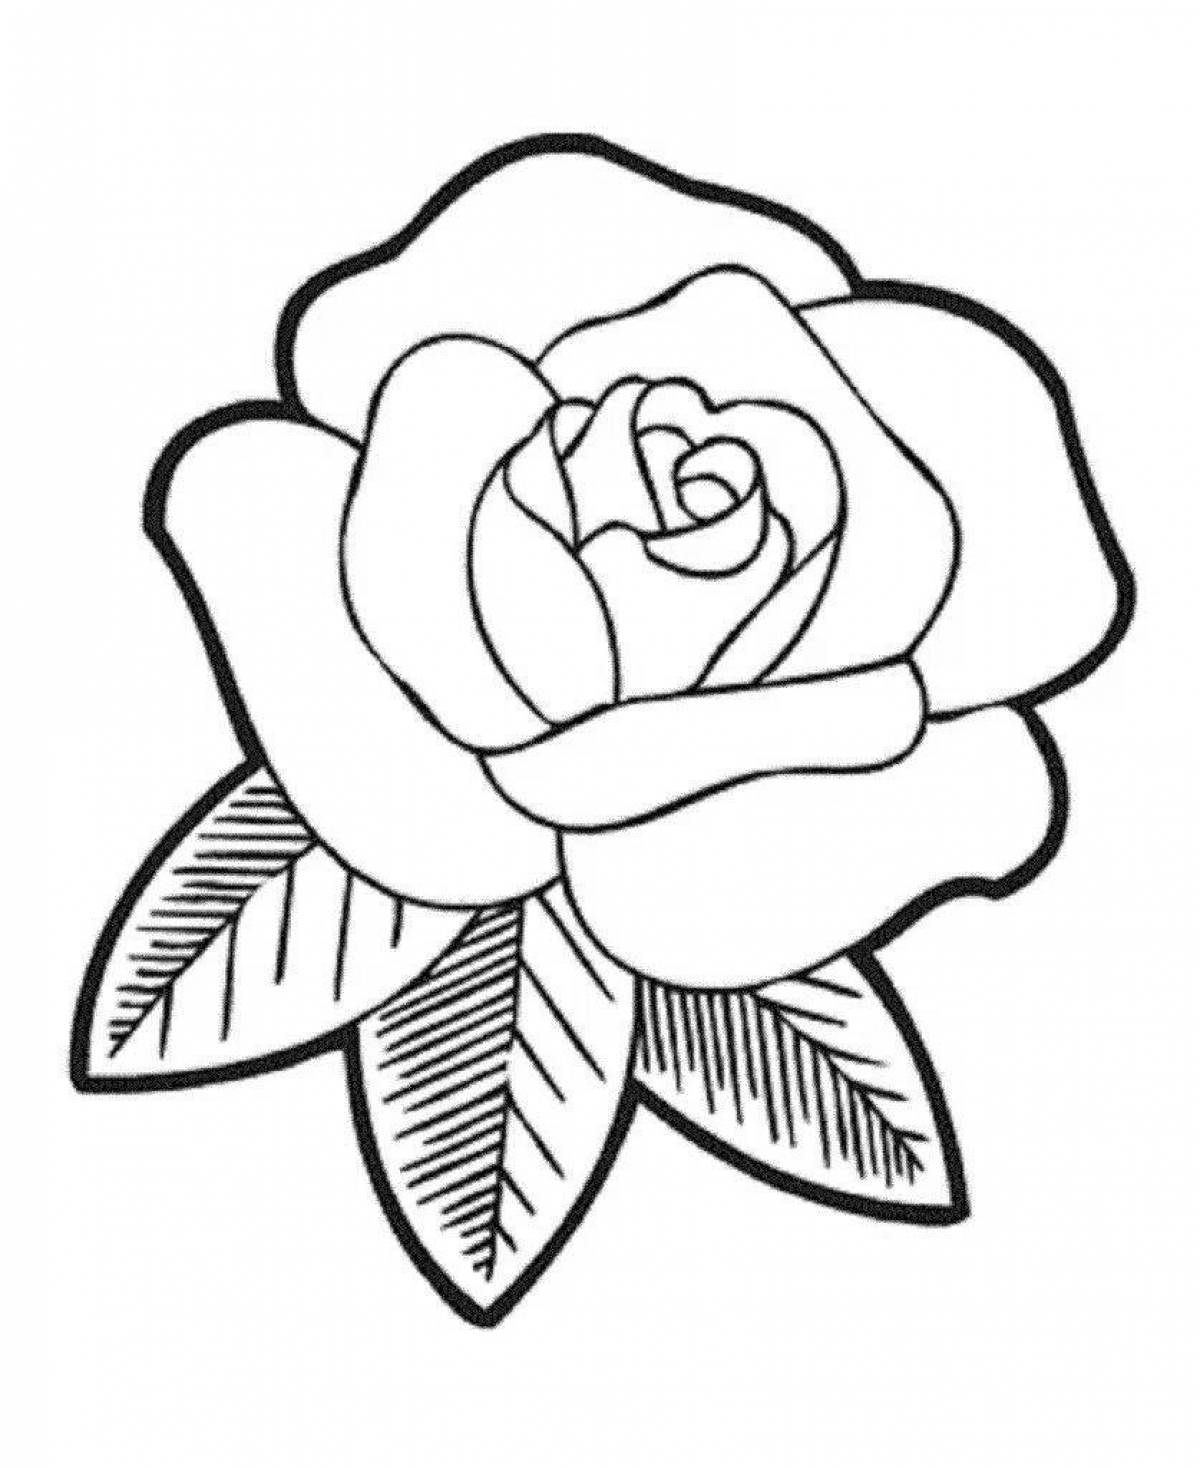 Стоковые фотографии по запросу Рисунок бутон розы